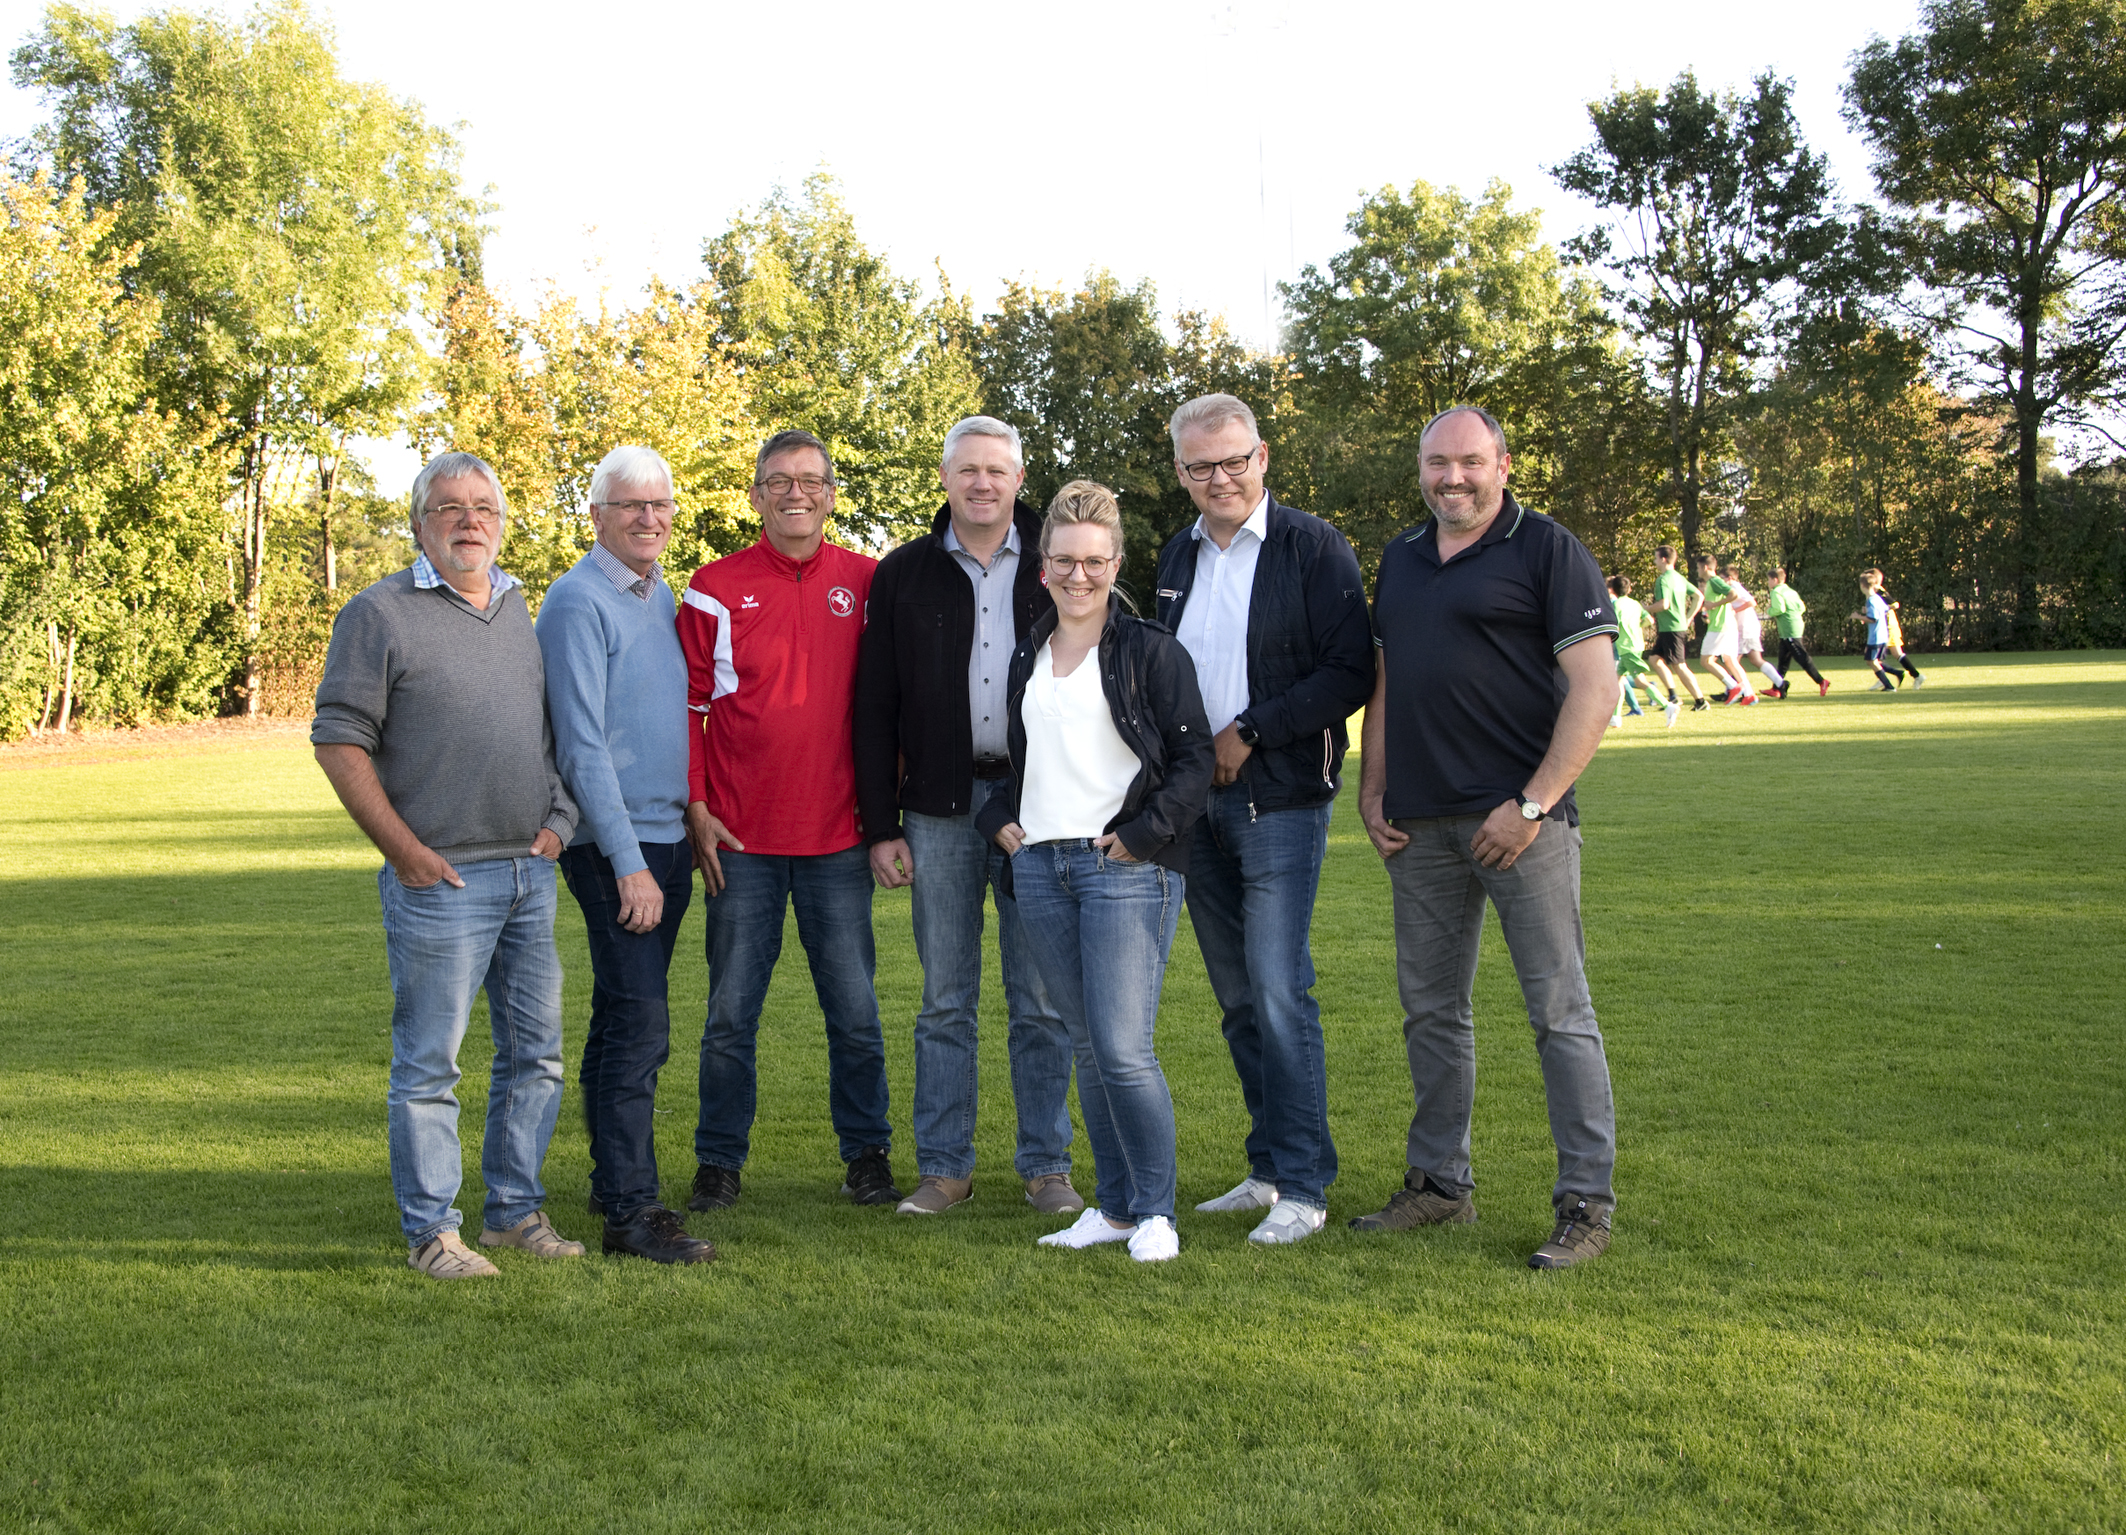 Raimund Pröger, Wenzel Schwienheer, Meinolf Hillemeier, Frank Hesse, Diana Kochtokrax, Manfred Rehkemper und Hubert Schulte-Tickmann